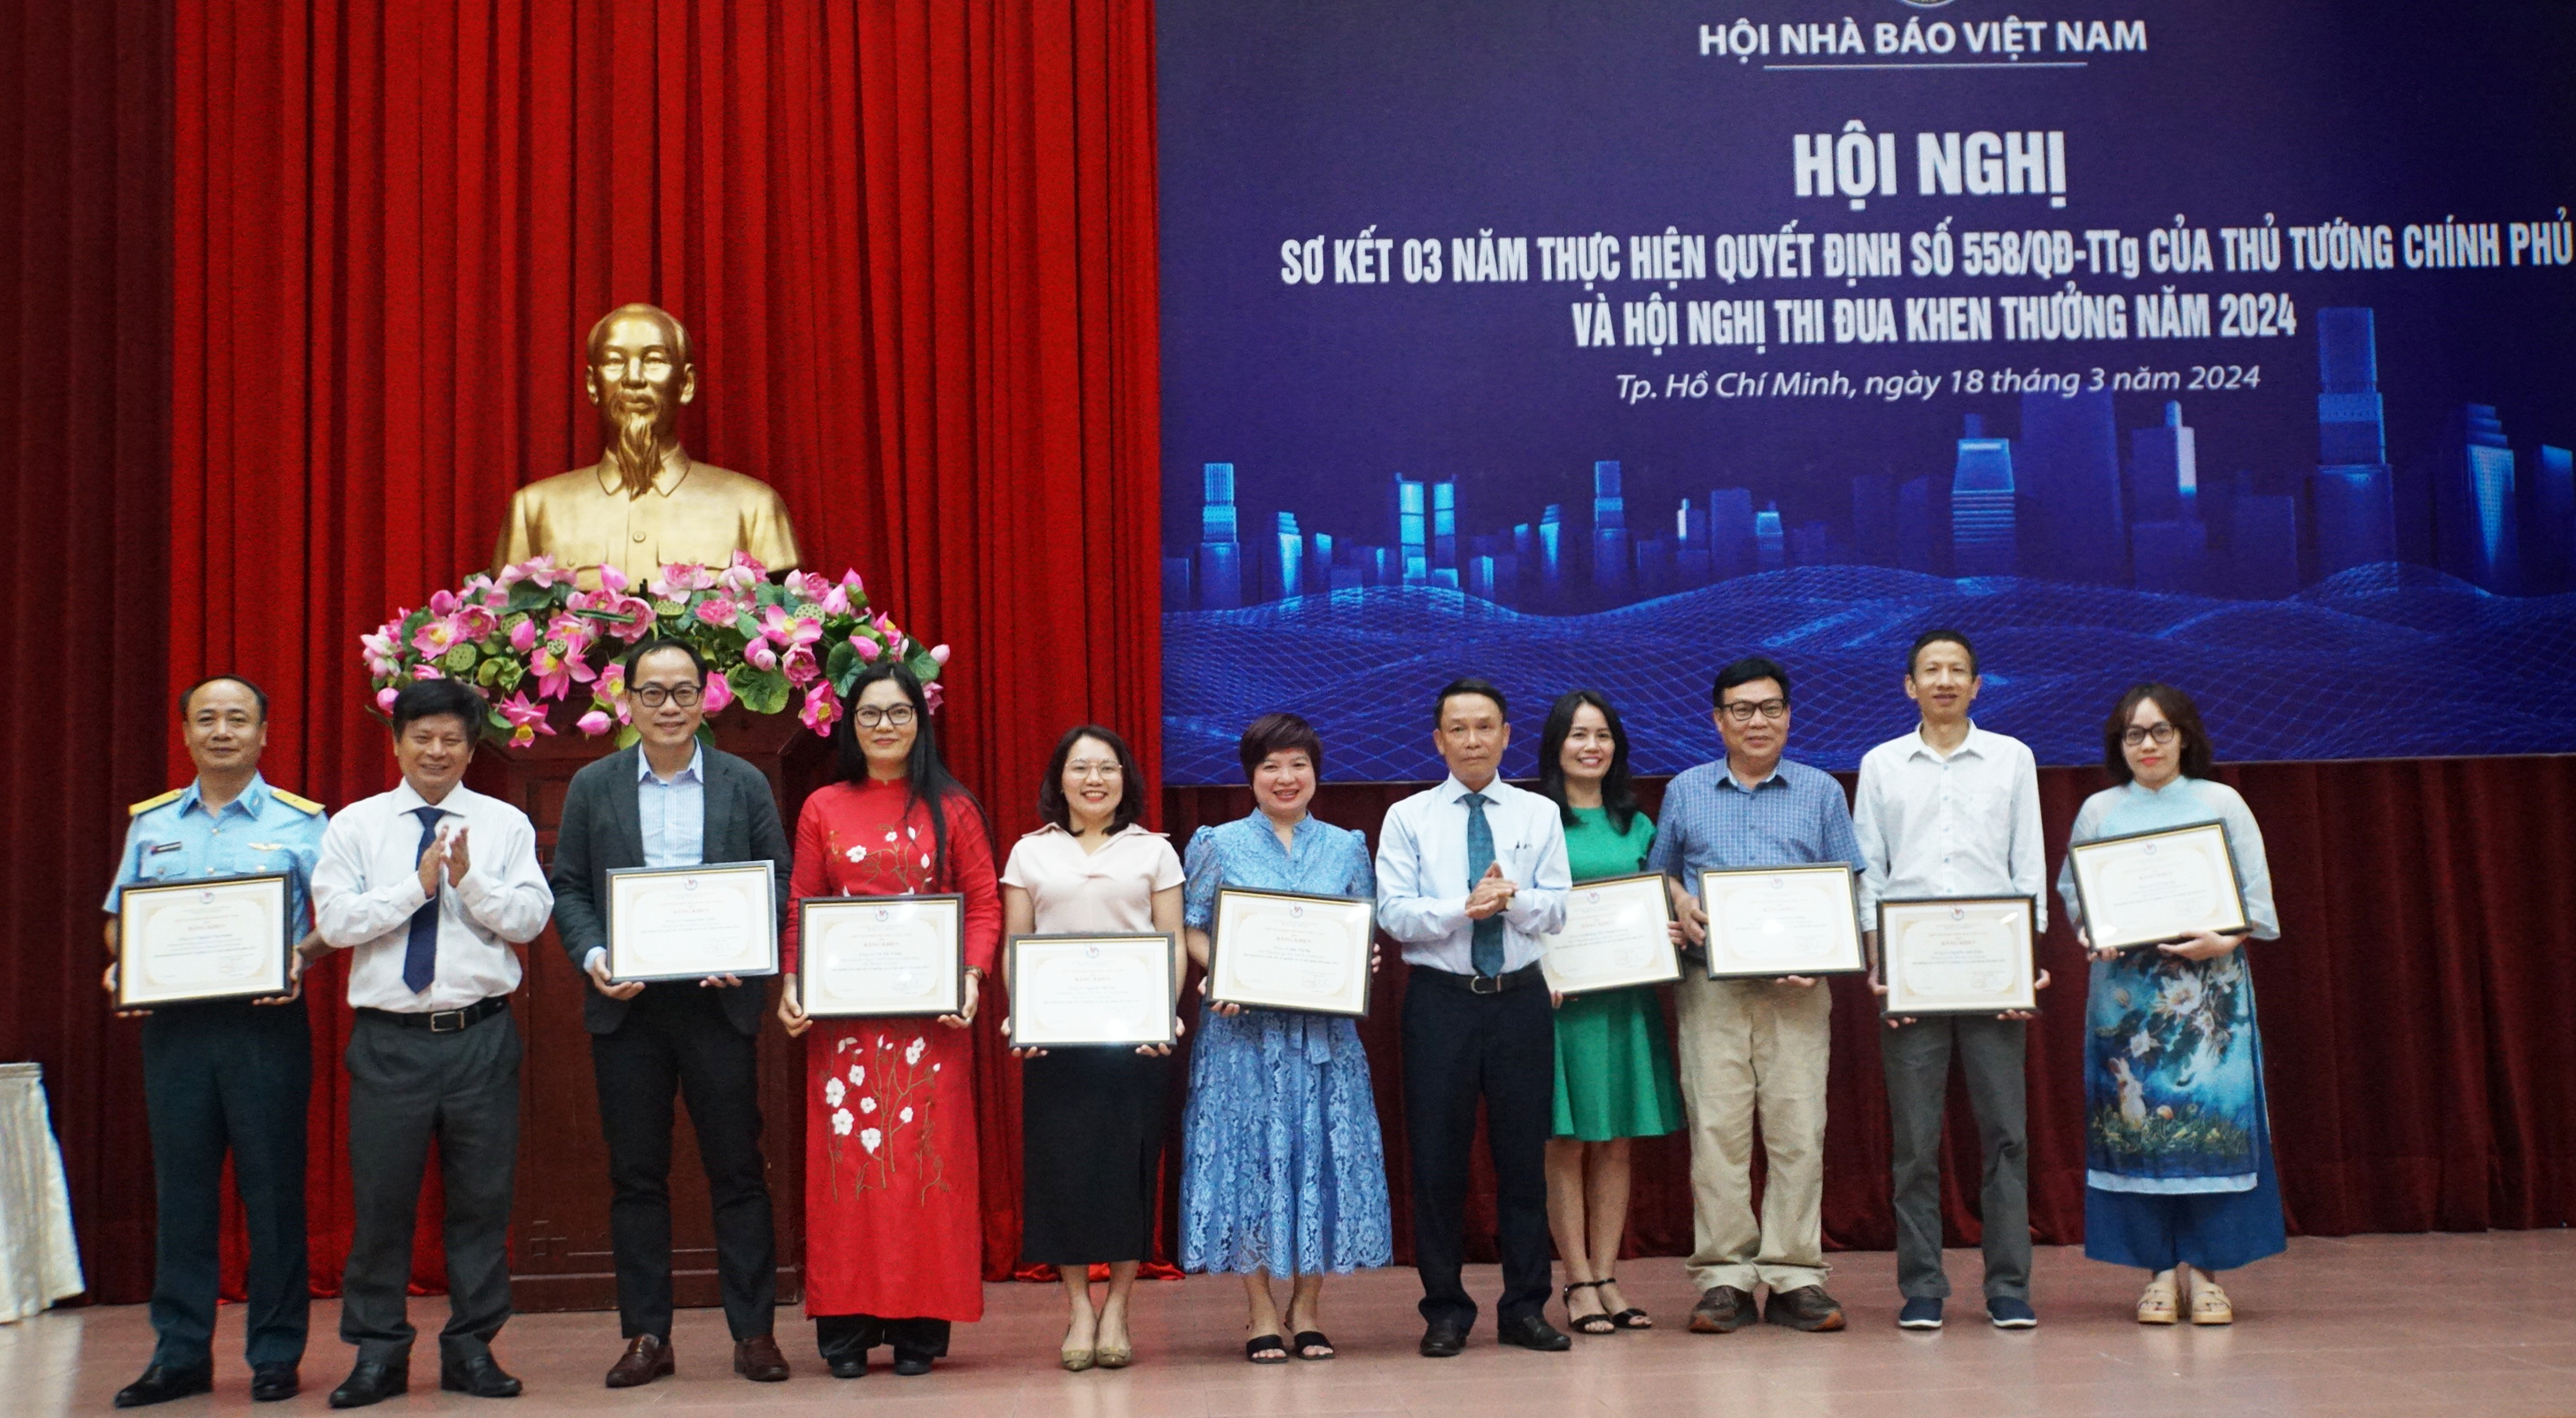 Nhà báo Dương Thanh Hương, Phó Tổng biên tập Báo Giáo dục và Thời đại (thứ sáu từ trái sang) nhận bằng khen của Hội Nhà báo Việt Nam. (Ảnh: Mạnh Tùng)